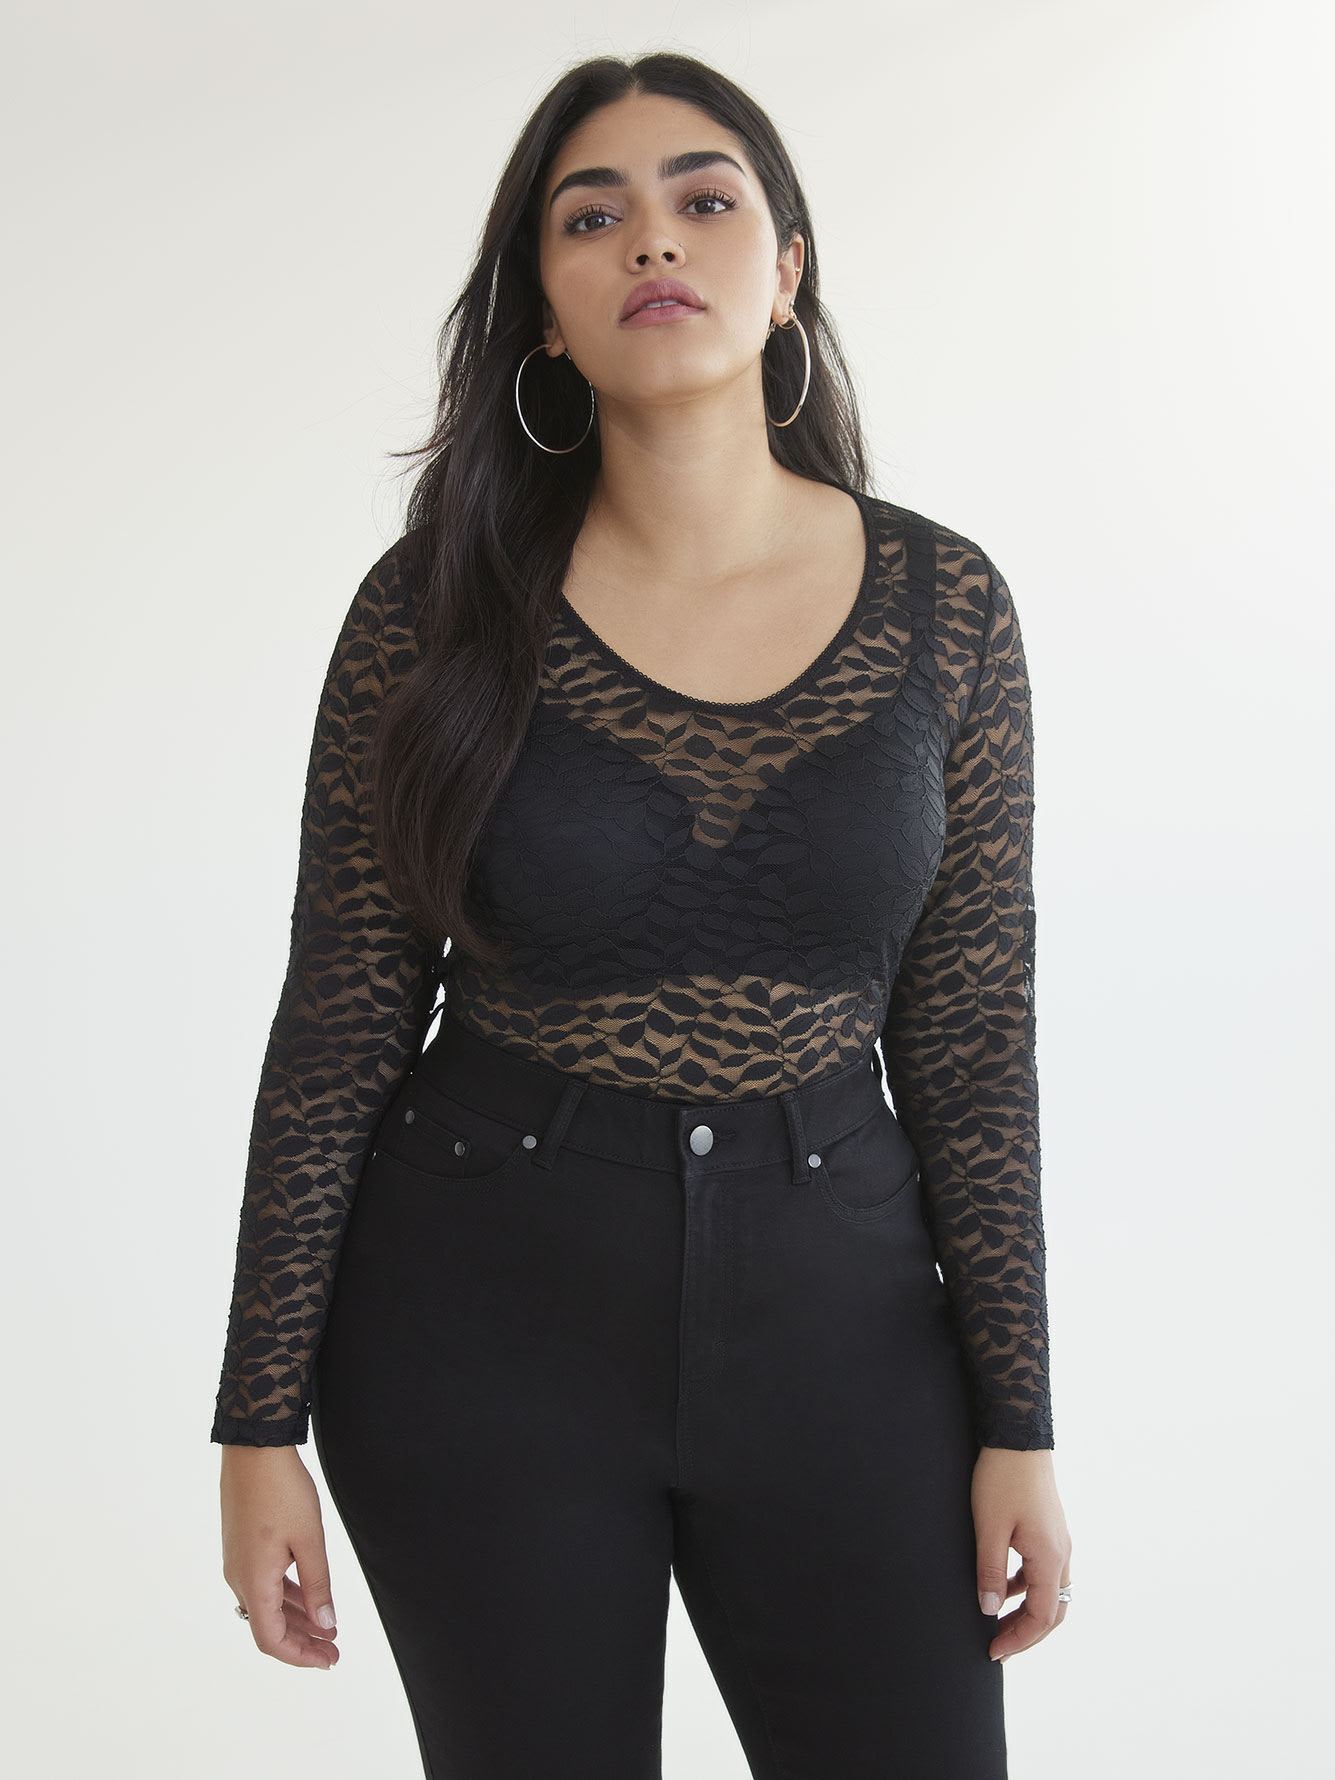 Black Lace Thong Bodysuit - Addition Elle